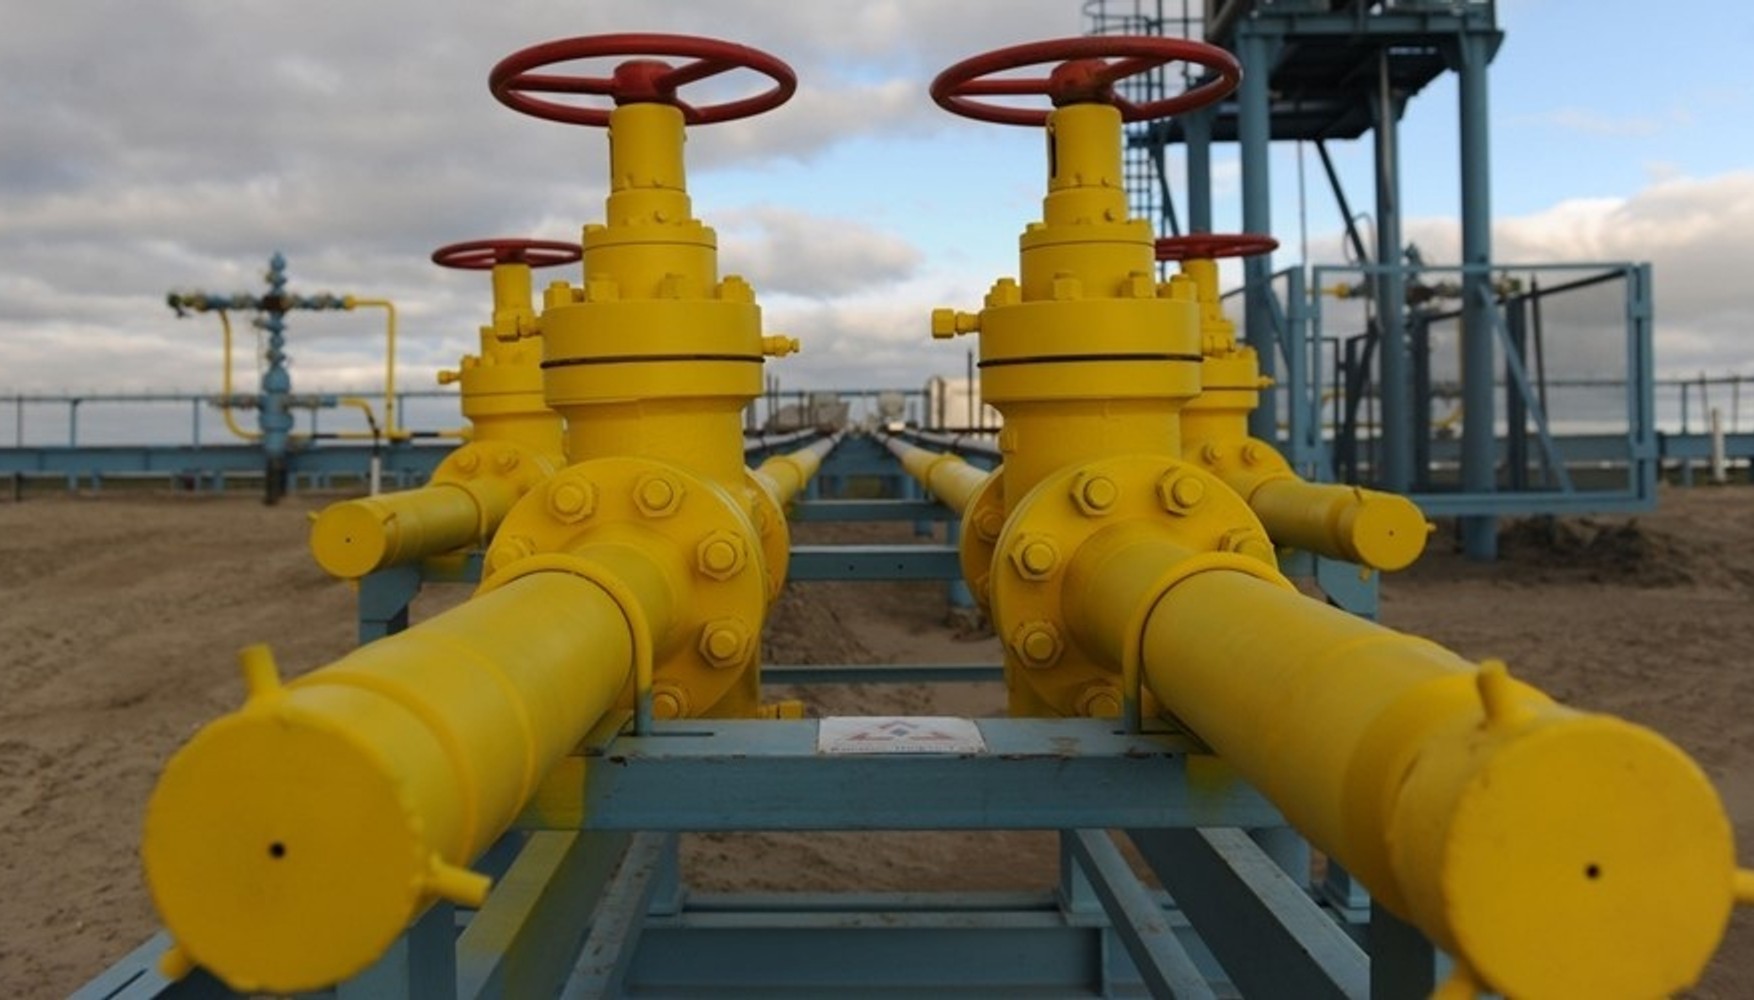 Евросоюз разработал план покупки российского газа без нарушения санкций – Bloomberg